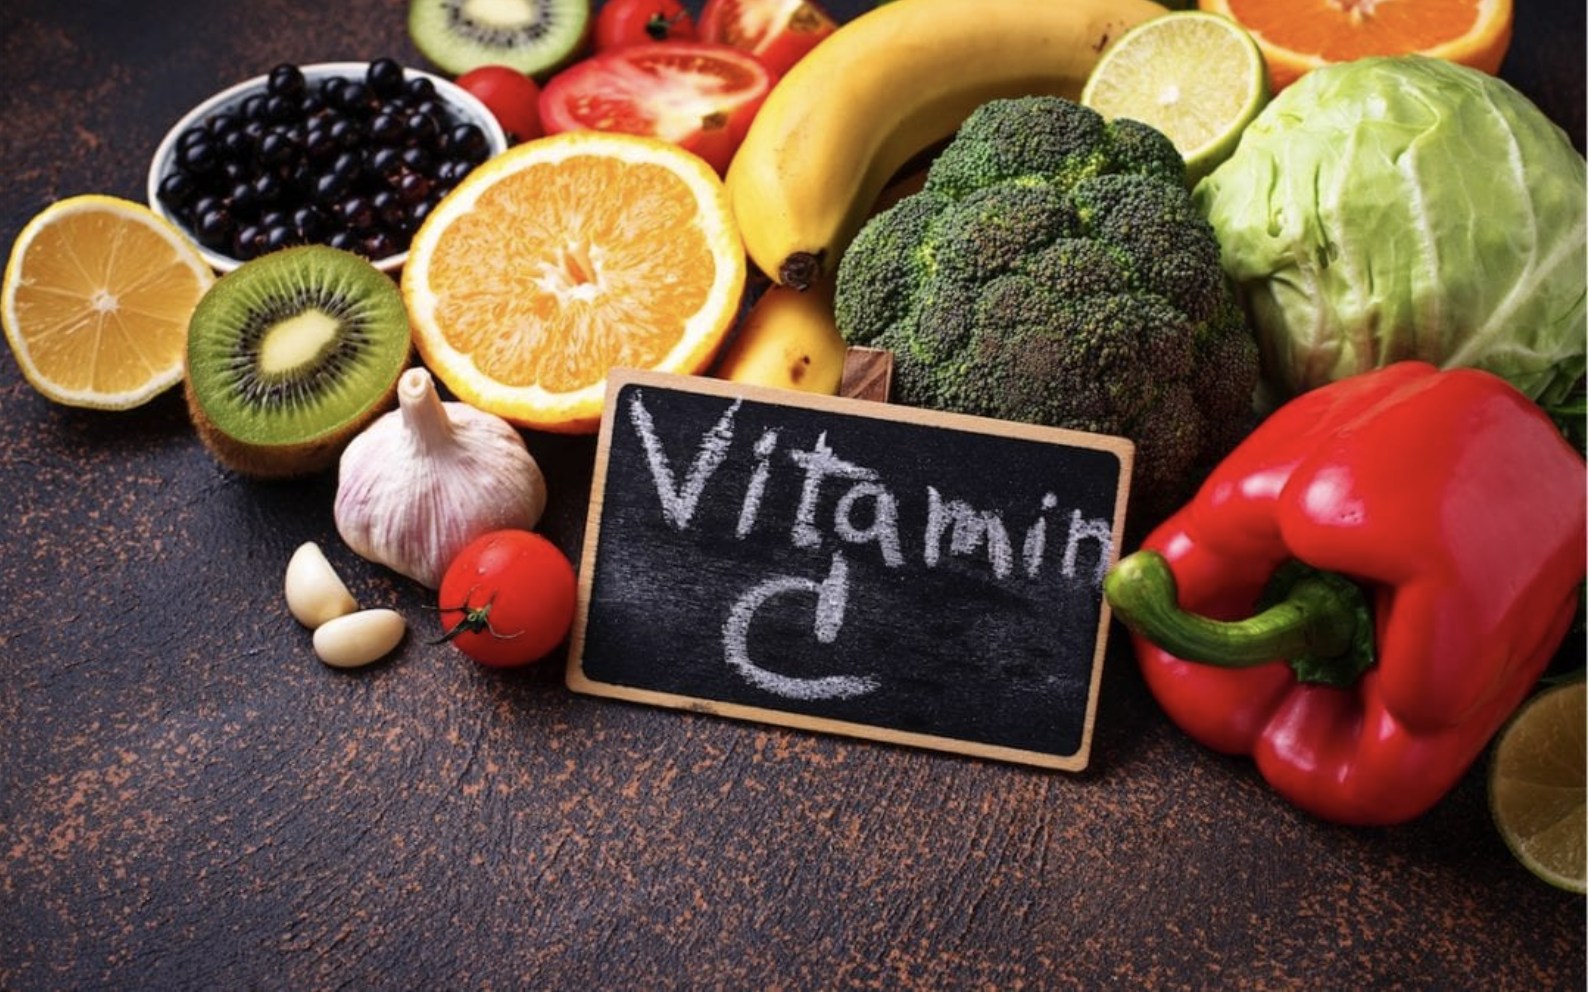  Thực phẩm chứa vitamin C ngoài cam  - Ảnh 1.